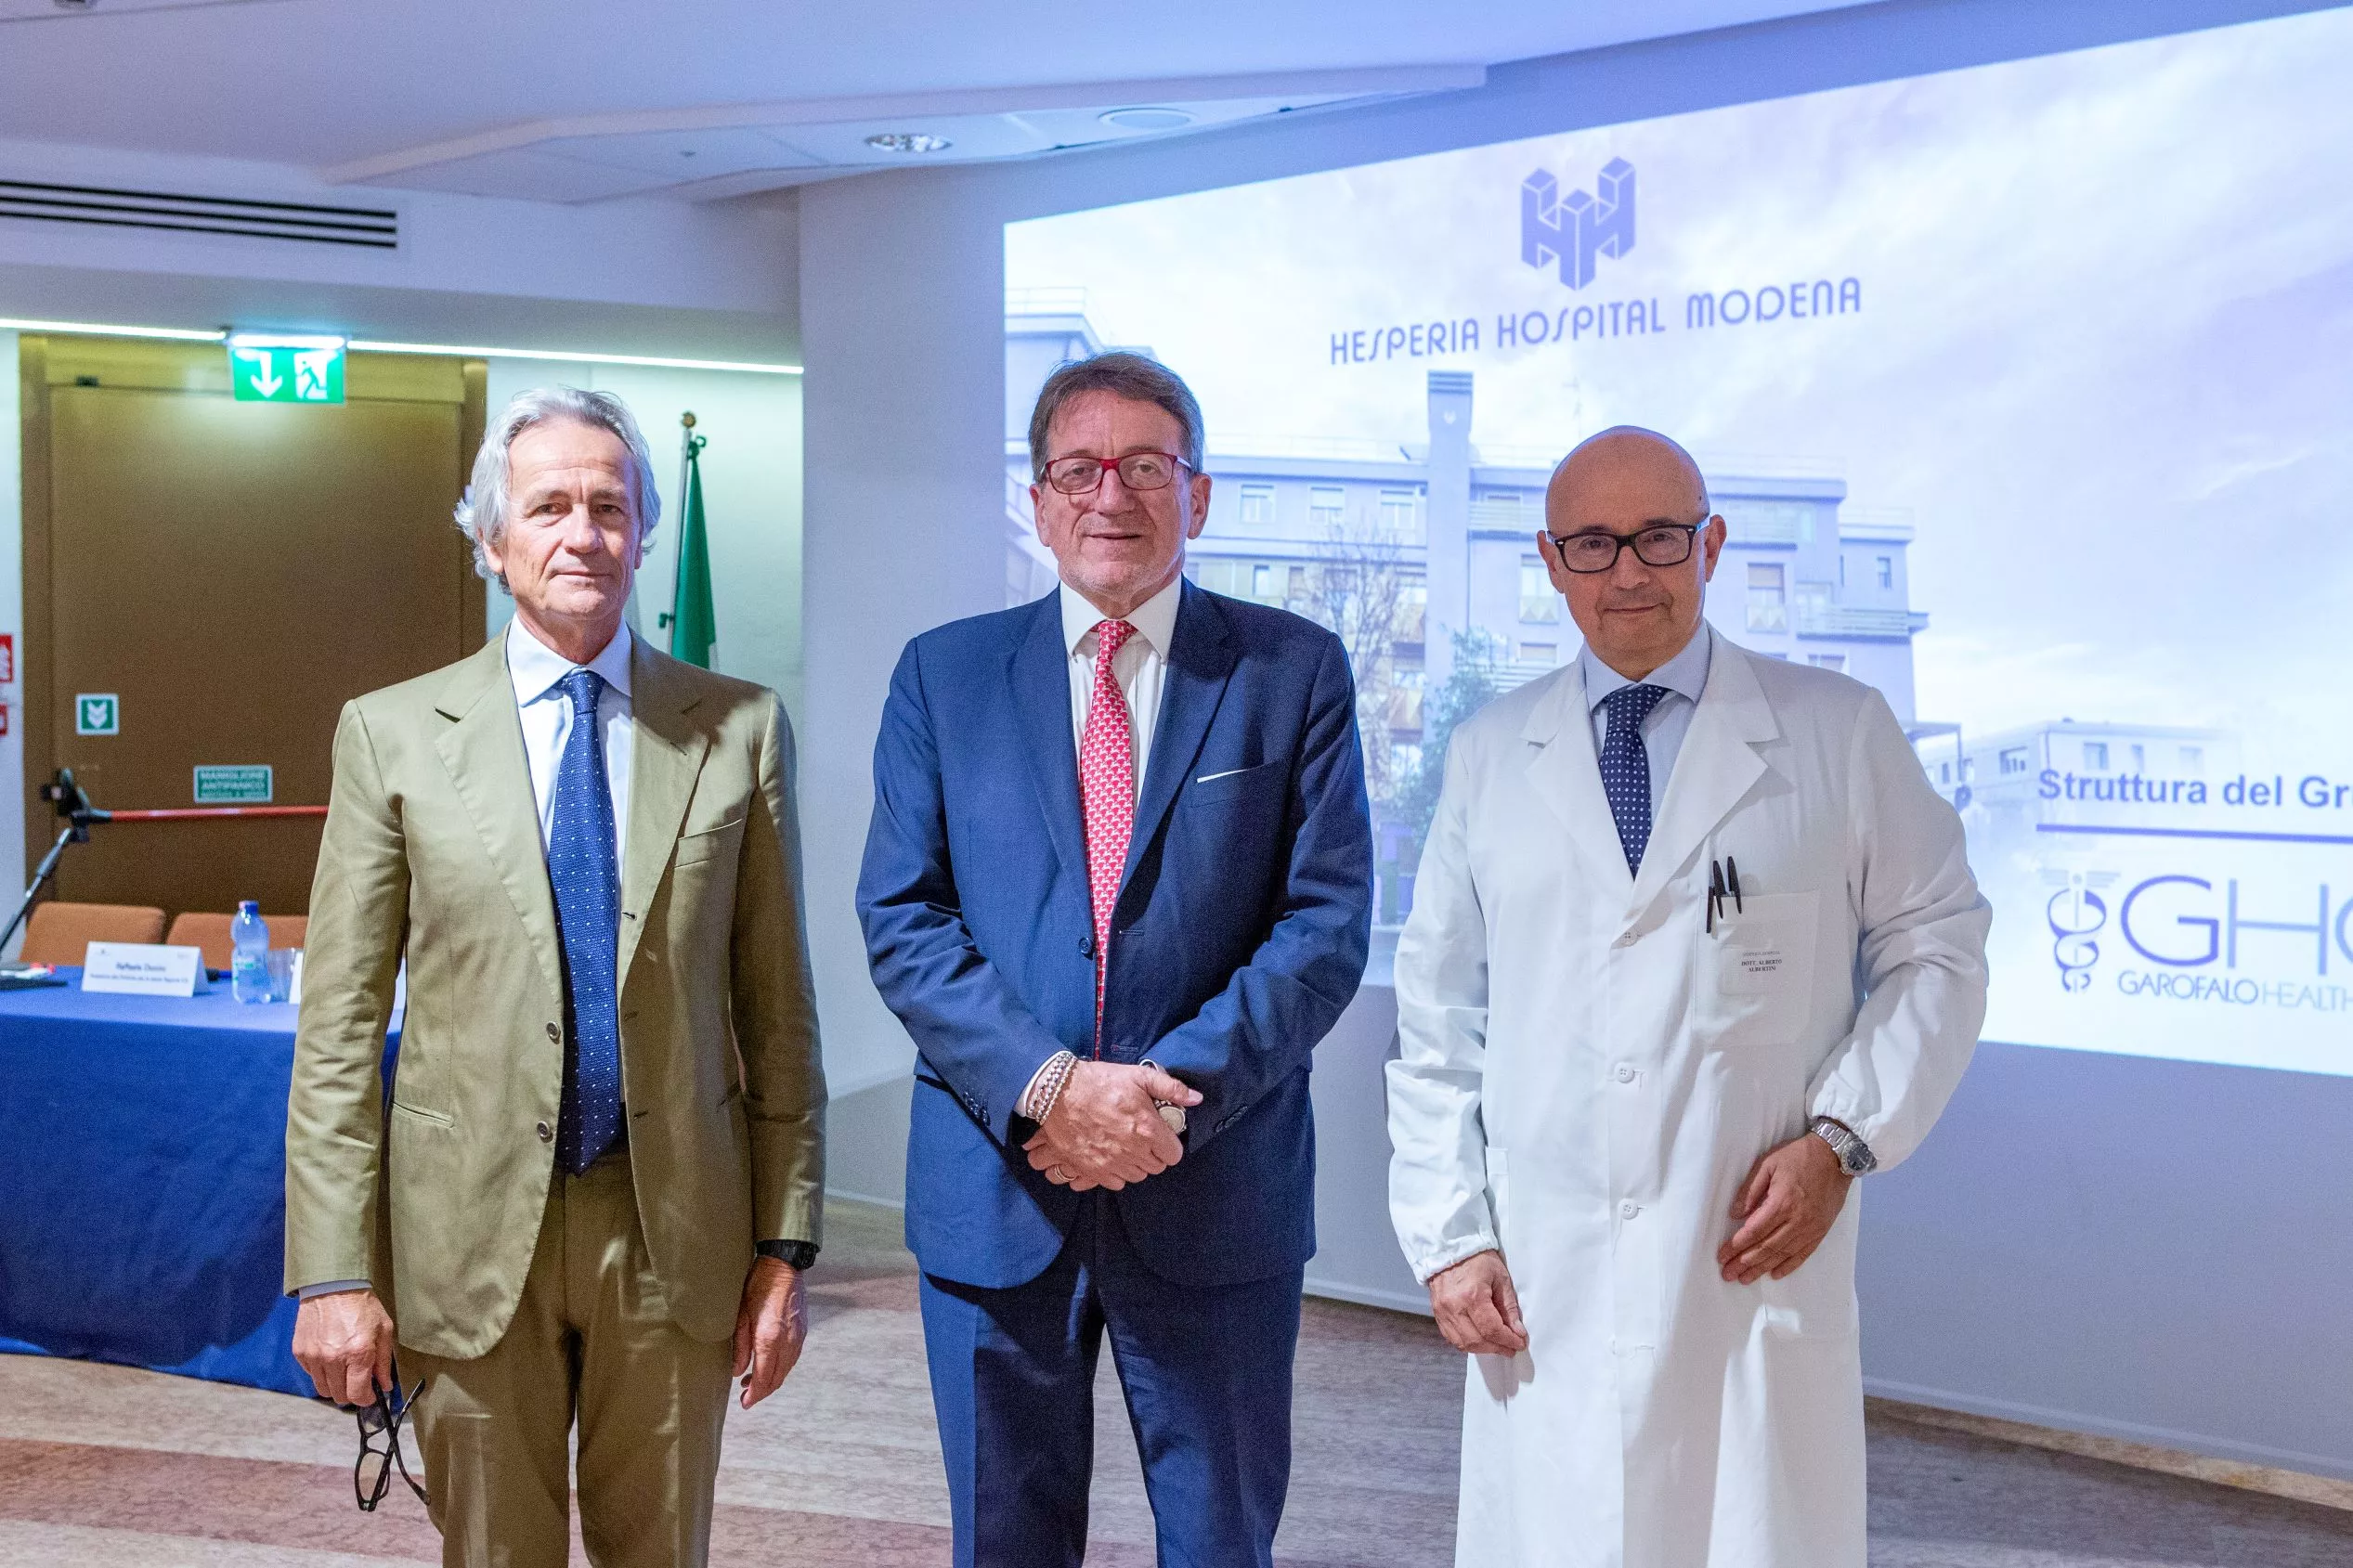 Primo intervento di cardiochirurgia robot-assistito in Emilia Romagna